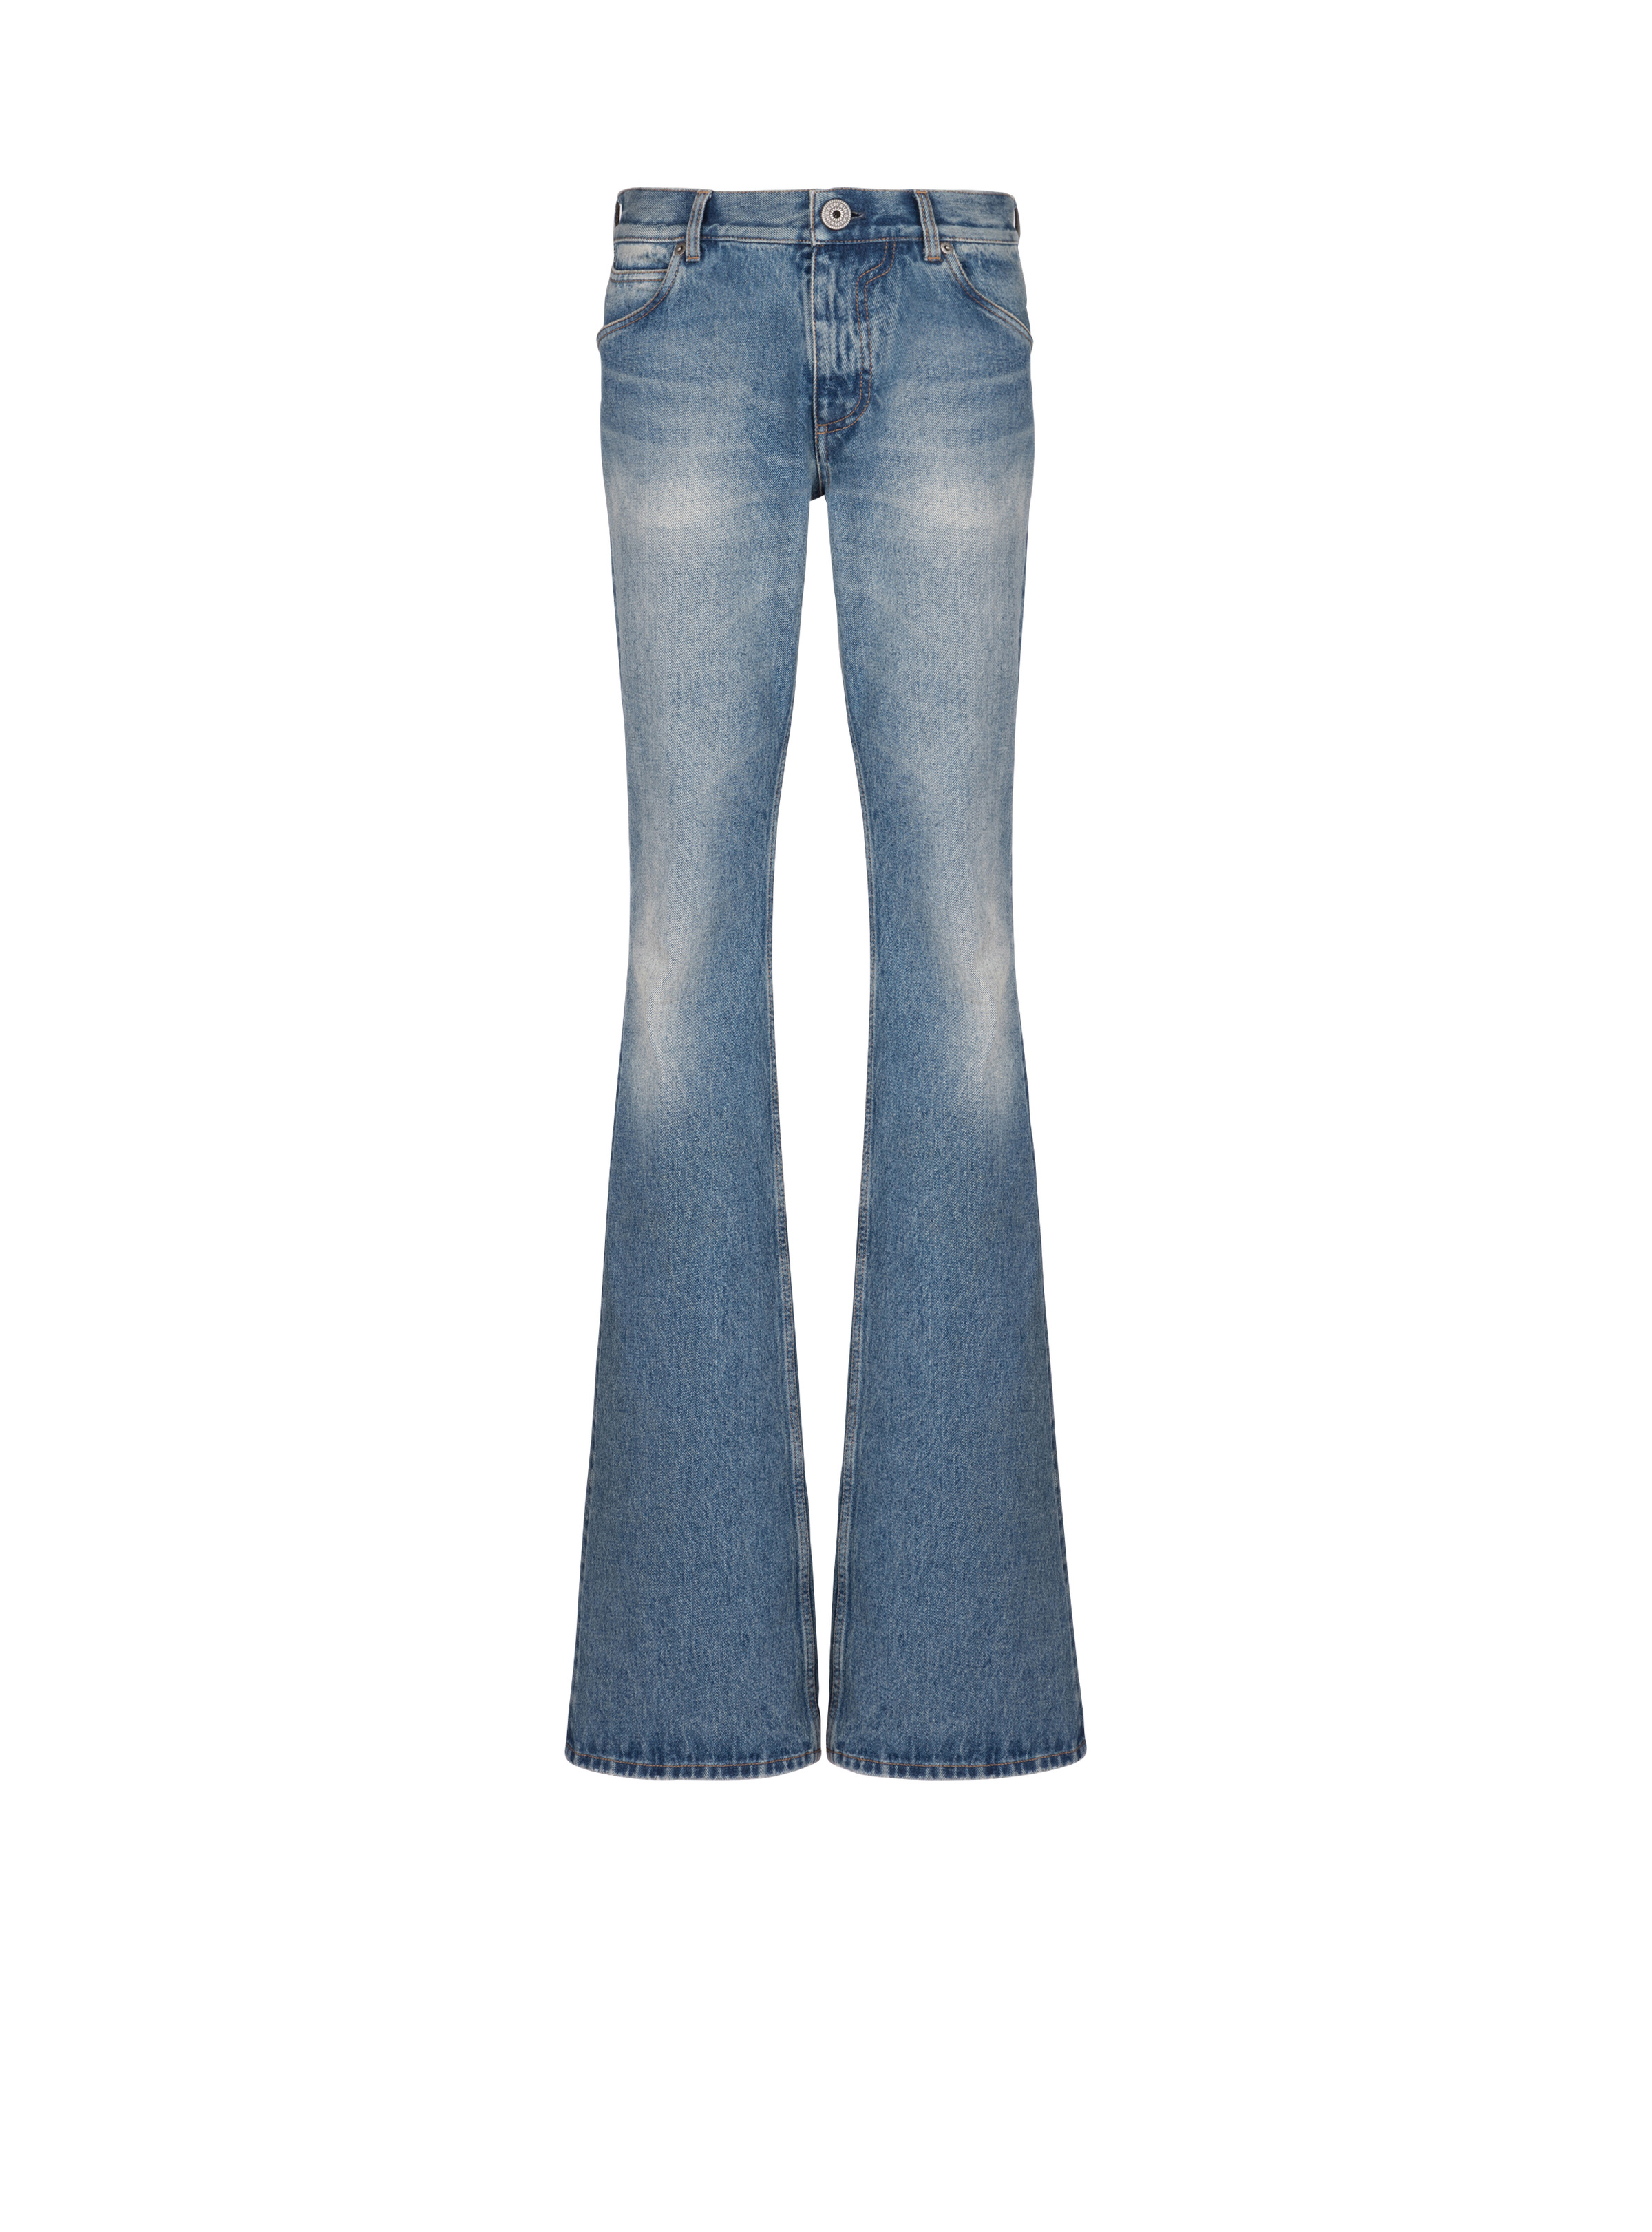 Blue Wash vintage denim jeans - 2